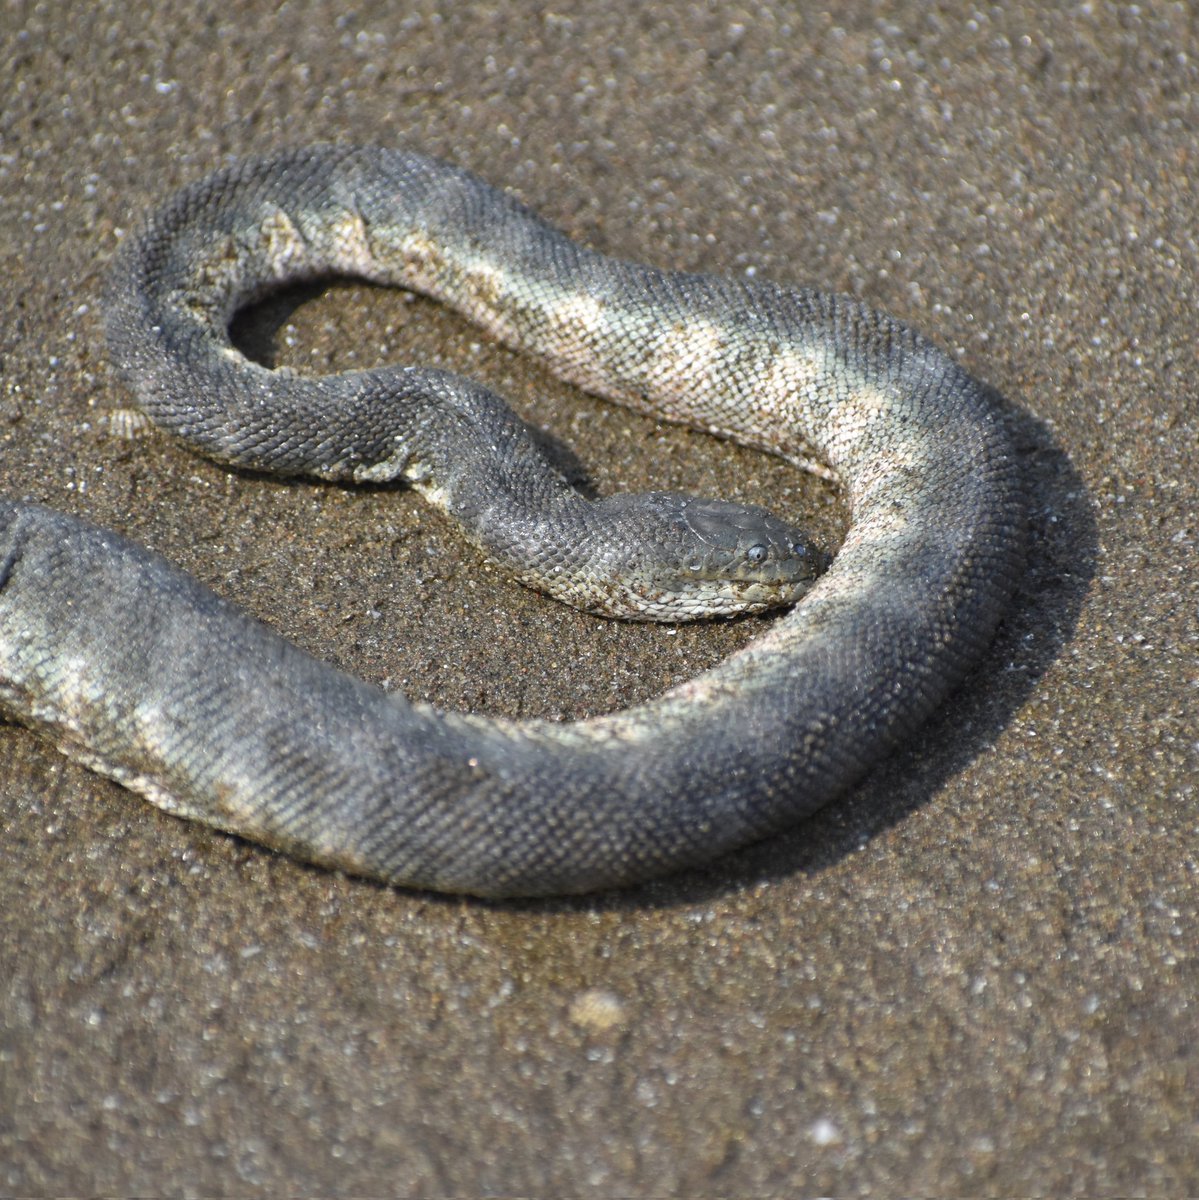 Enhydrina aka Hook-nosed sea snake, Goa
#IndiAves #IndiWild #WildlifeWeek2023 #NaturePhotography #snakes